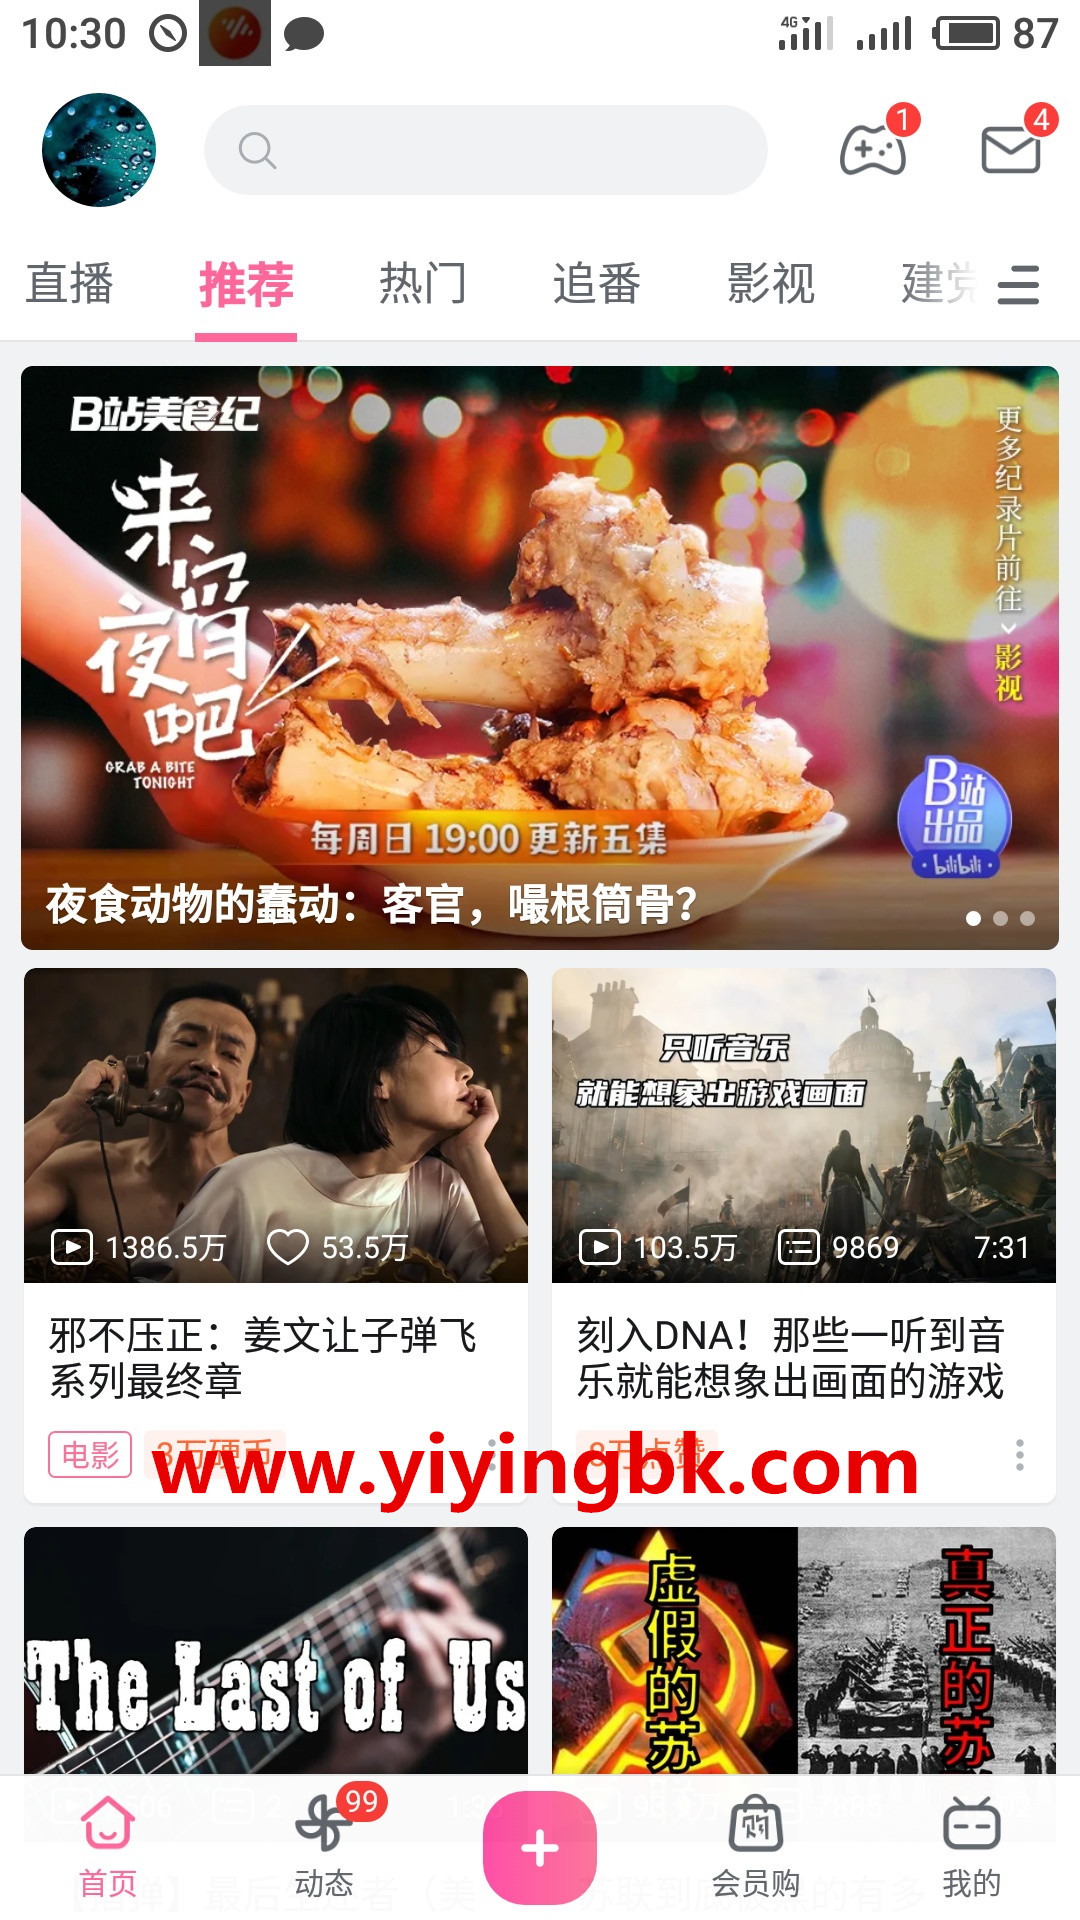 免费看蓝光1080P超高清电影和视频，新用户还能免费领14元现金红包。www.yiyingbk.com